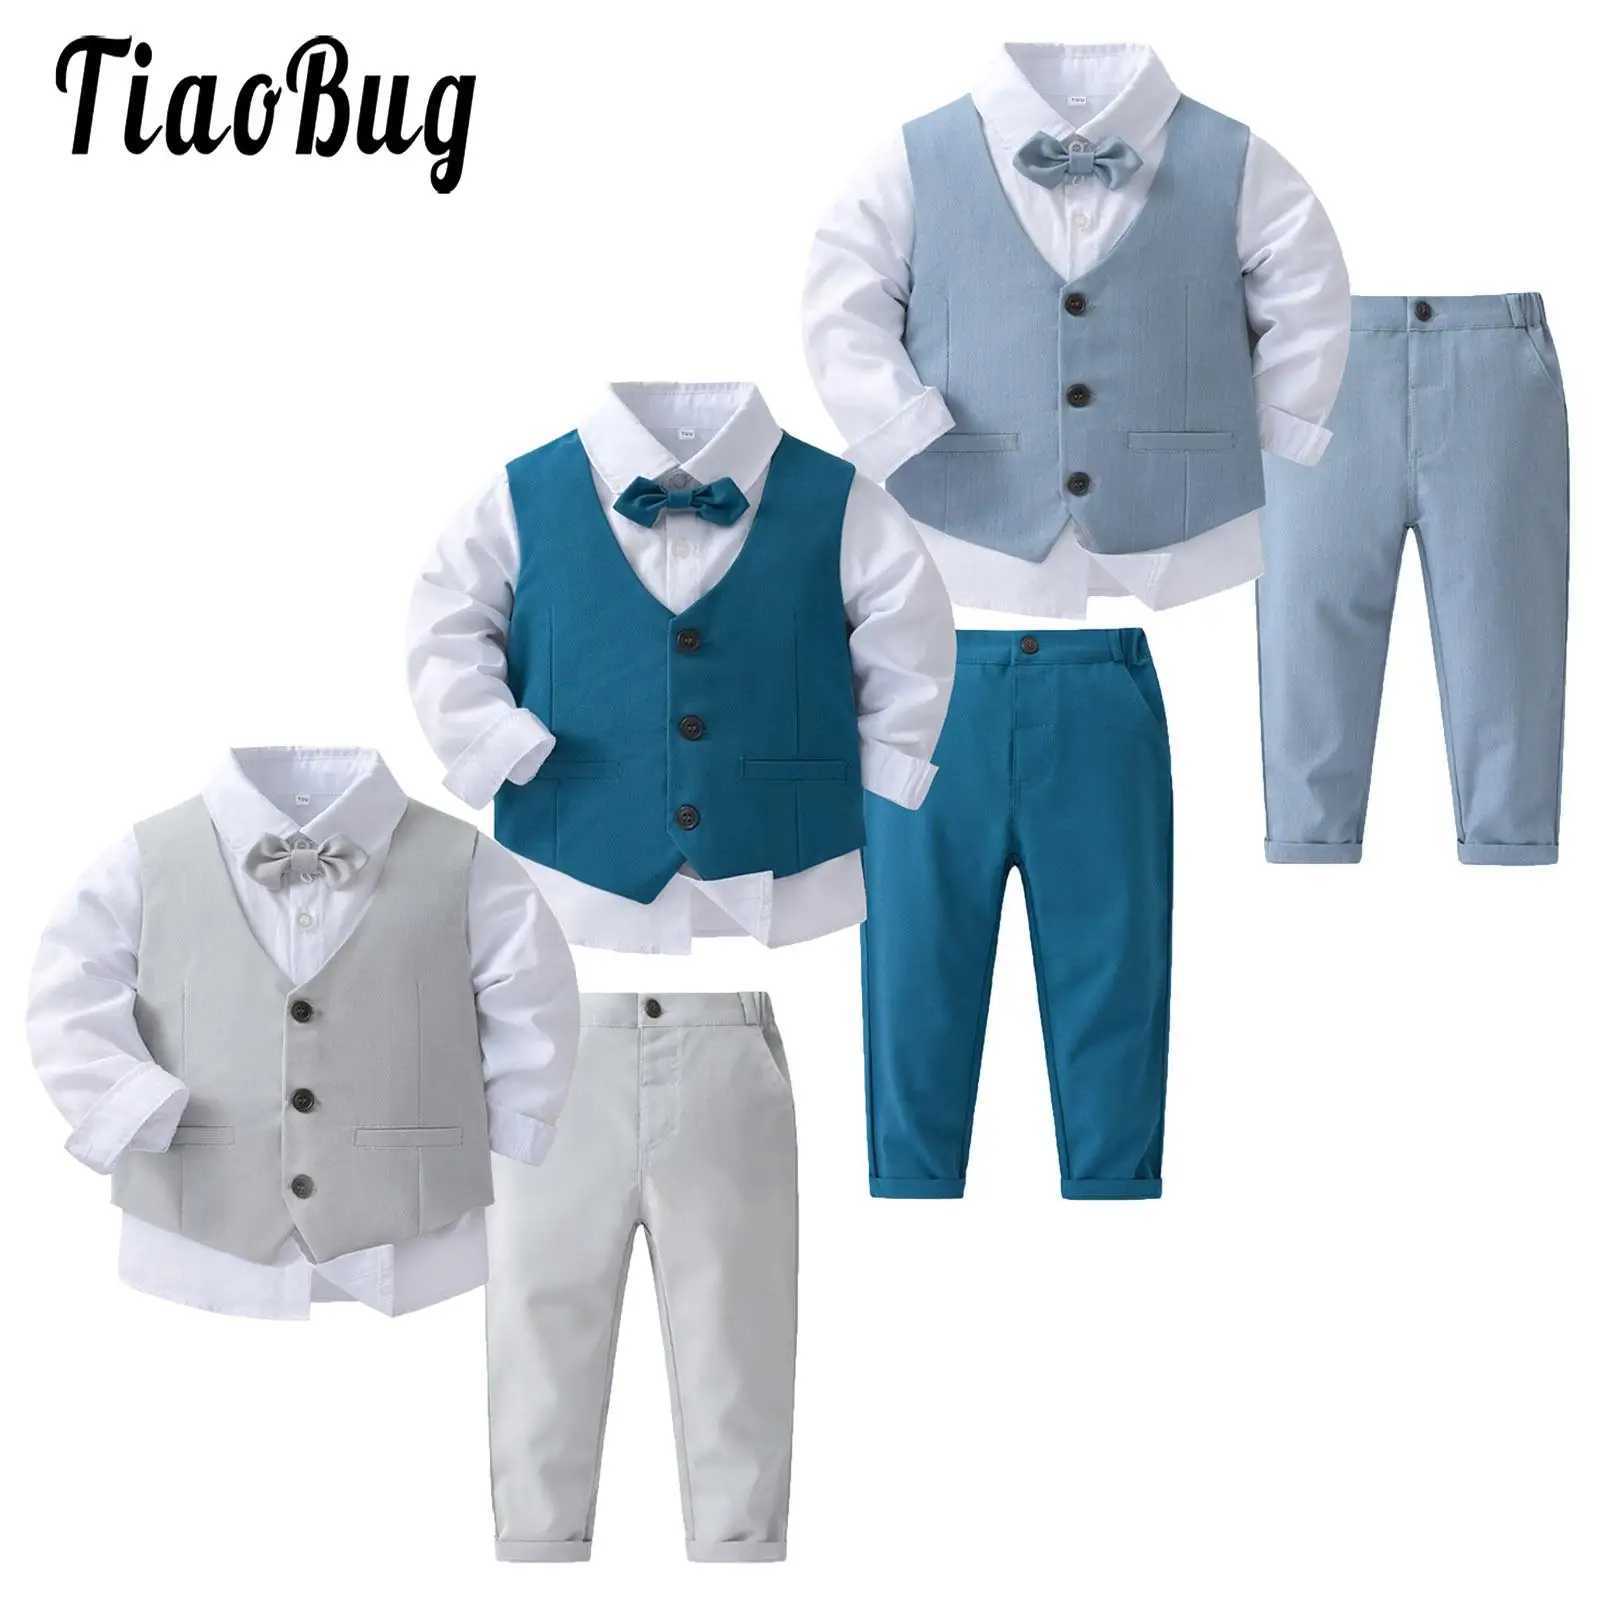 Kledingsets Heren Kleding Heren Evening Jurk Boot Tie Shirt Vestbroek 4 stuks modieuze babykledinghoens Clothingl240513